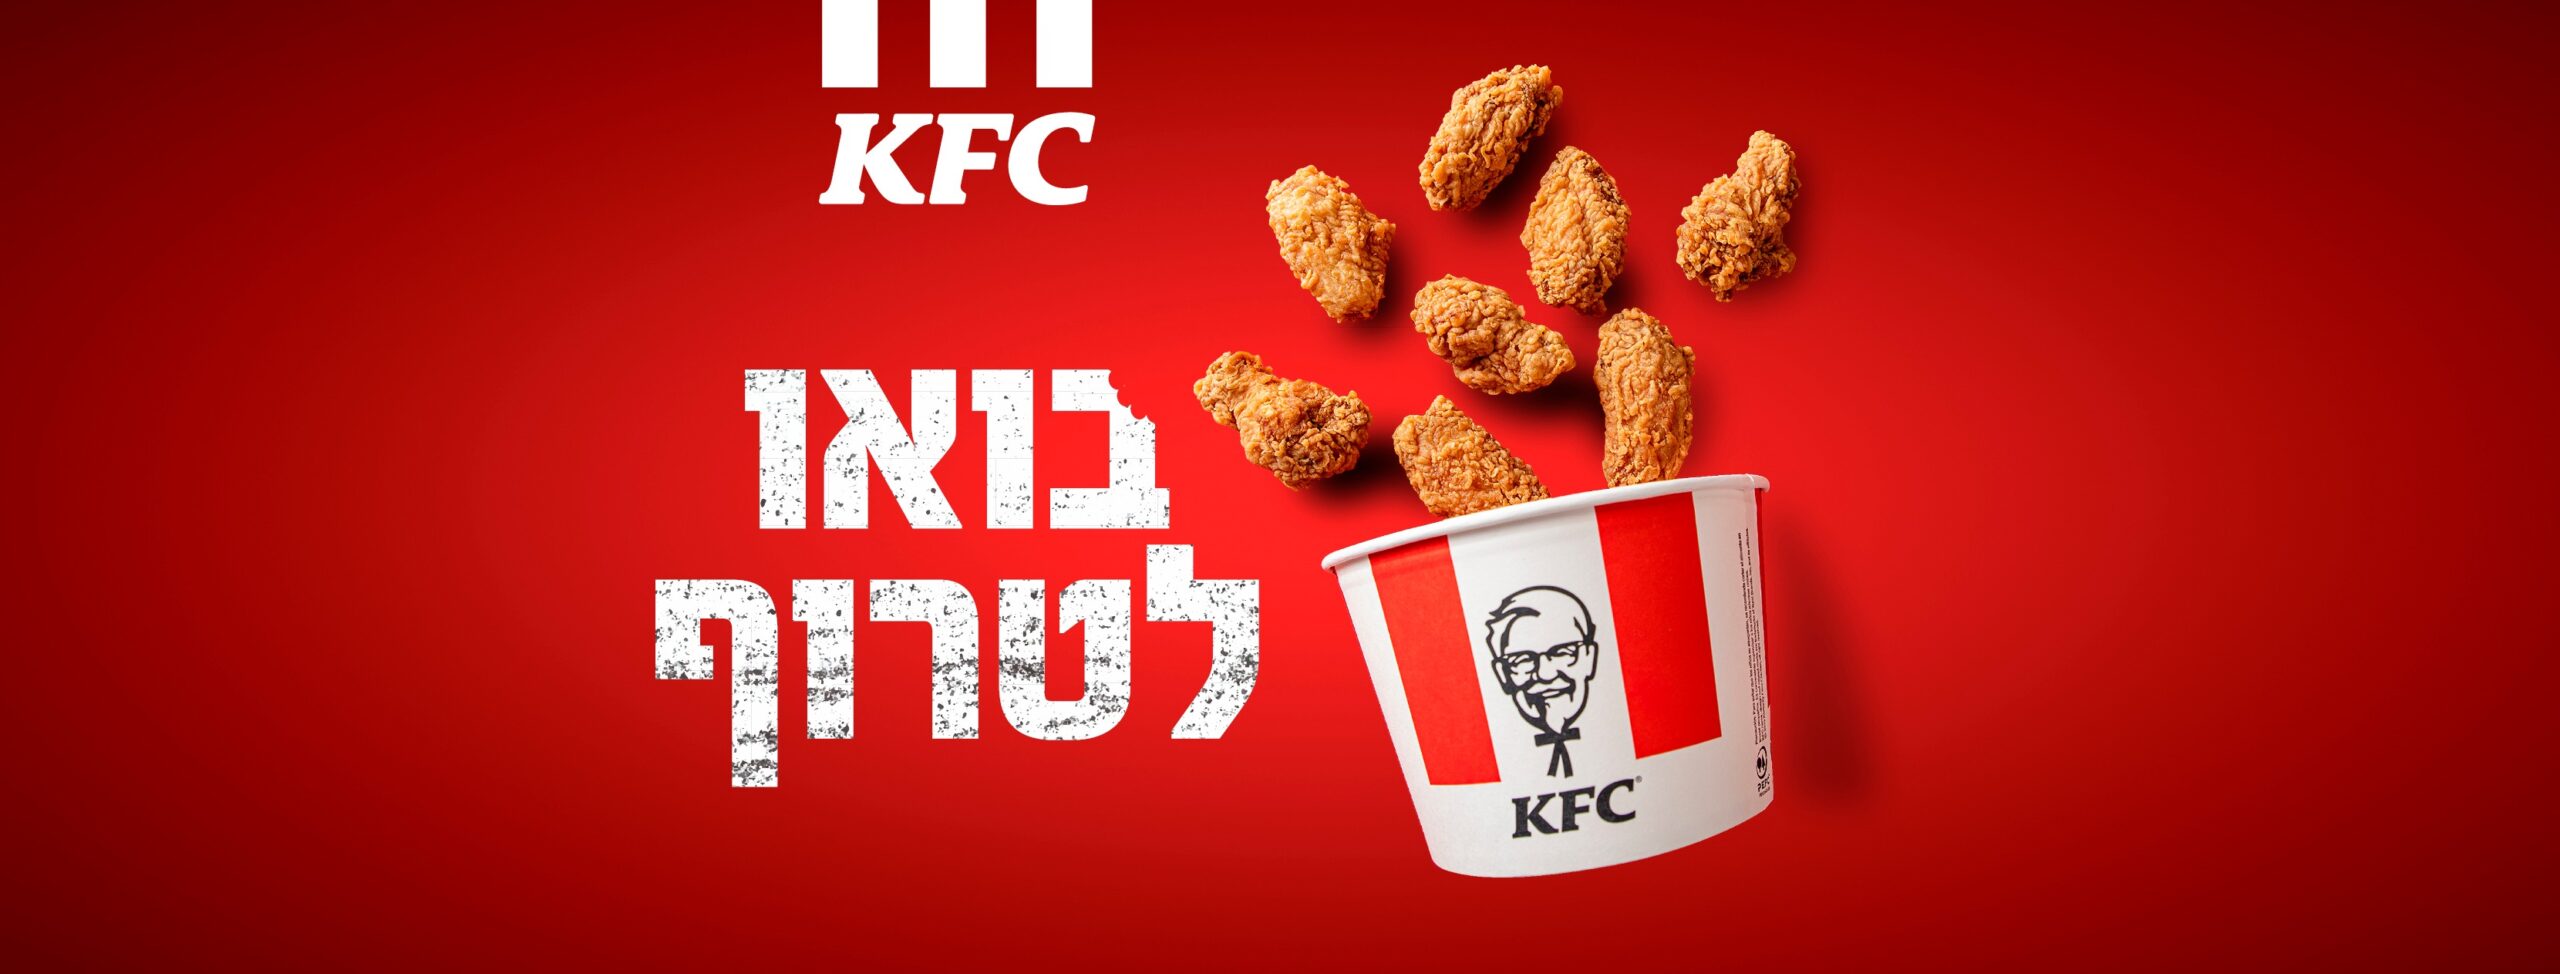 KFC_AD2